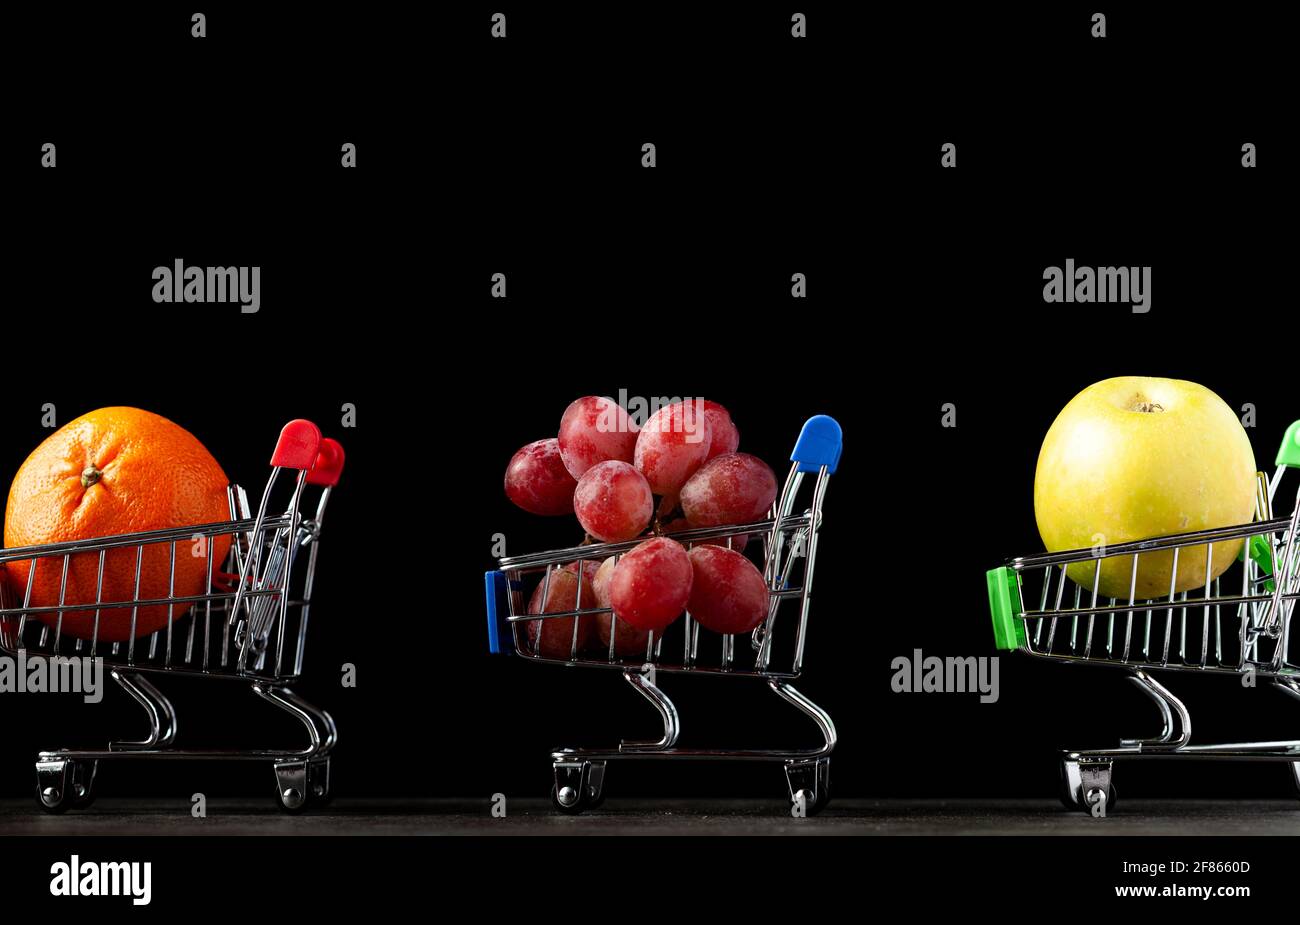 Gros plan, image de fond sombre avec trois chariots de magasinage de jouet rempli de pomme, mandarine et raisins UNE image de concept pour acheter des fruits plus sains a Banque D'Images